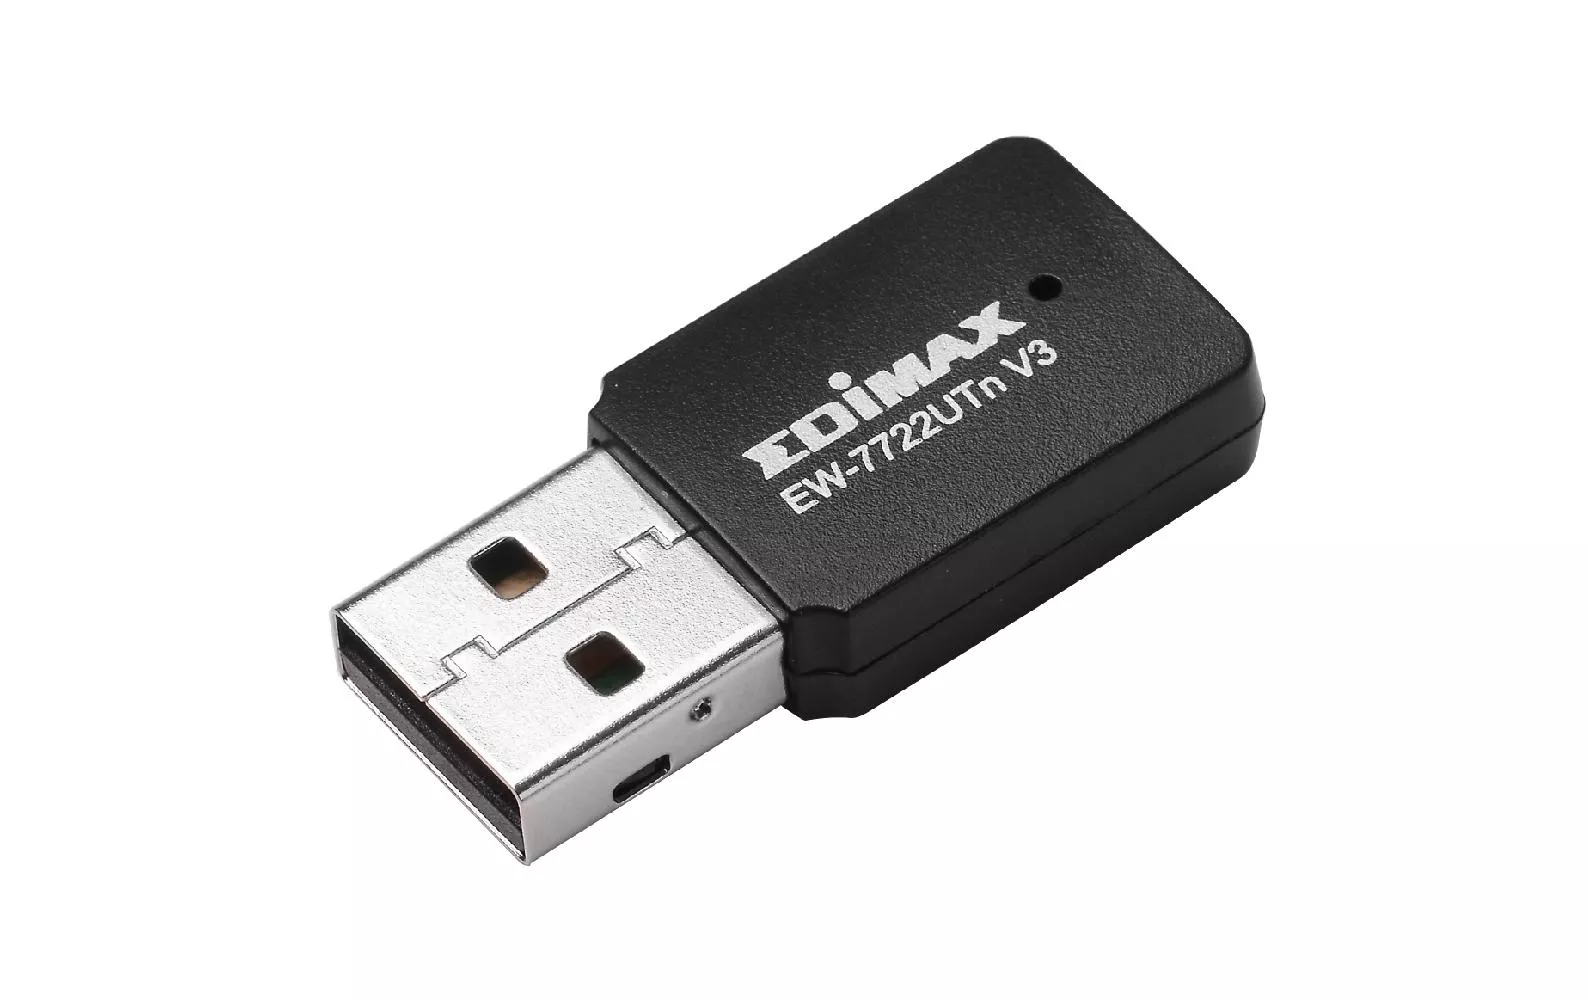 WLAN-N USB-Stick EW-7722UTN V3